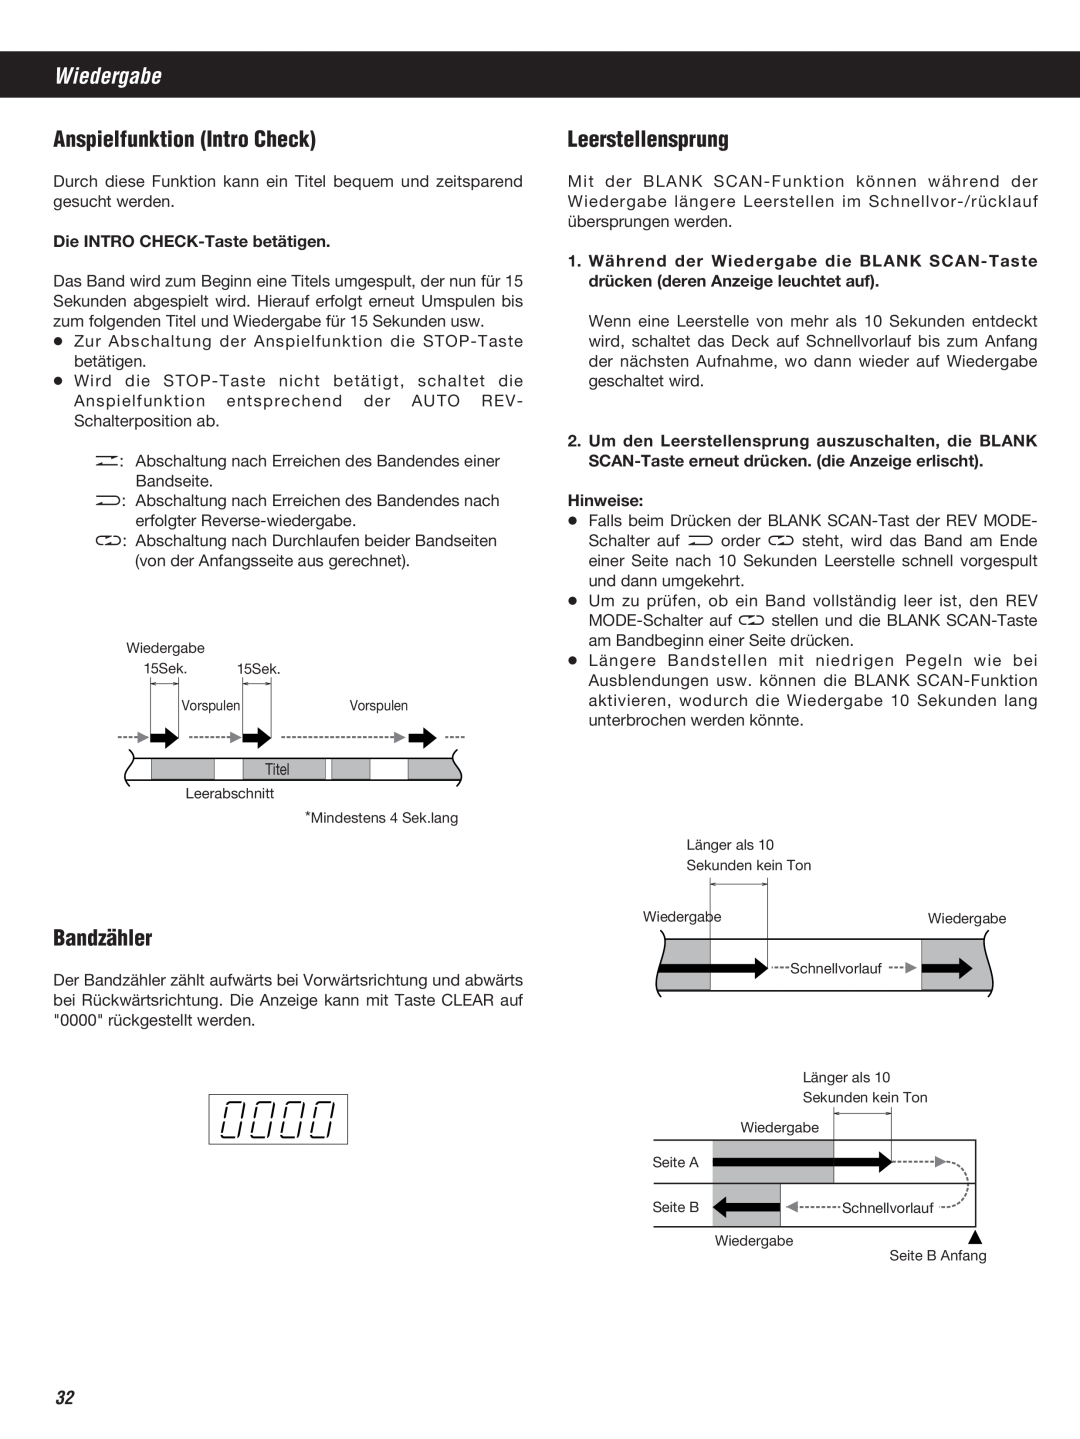 Teac W-860R owner manual Wiedergabe, Anspielfunktion Intro Check, Bandzähler, Leerstellensprung 